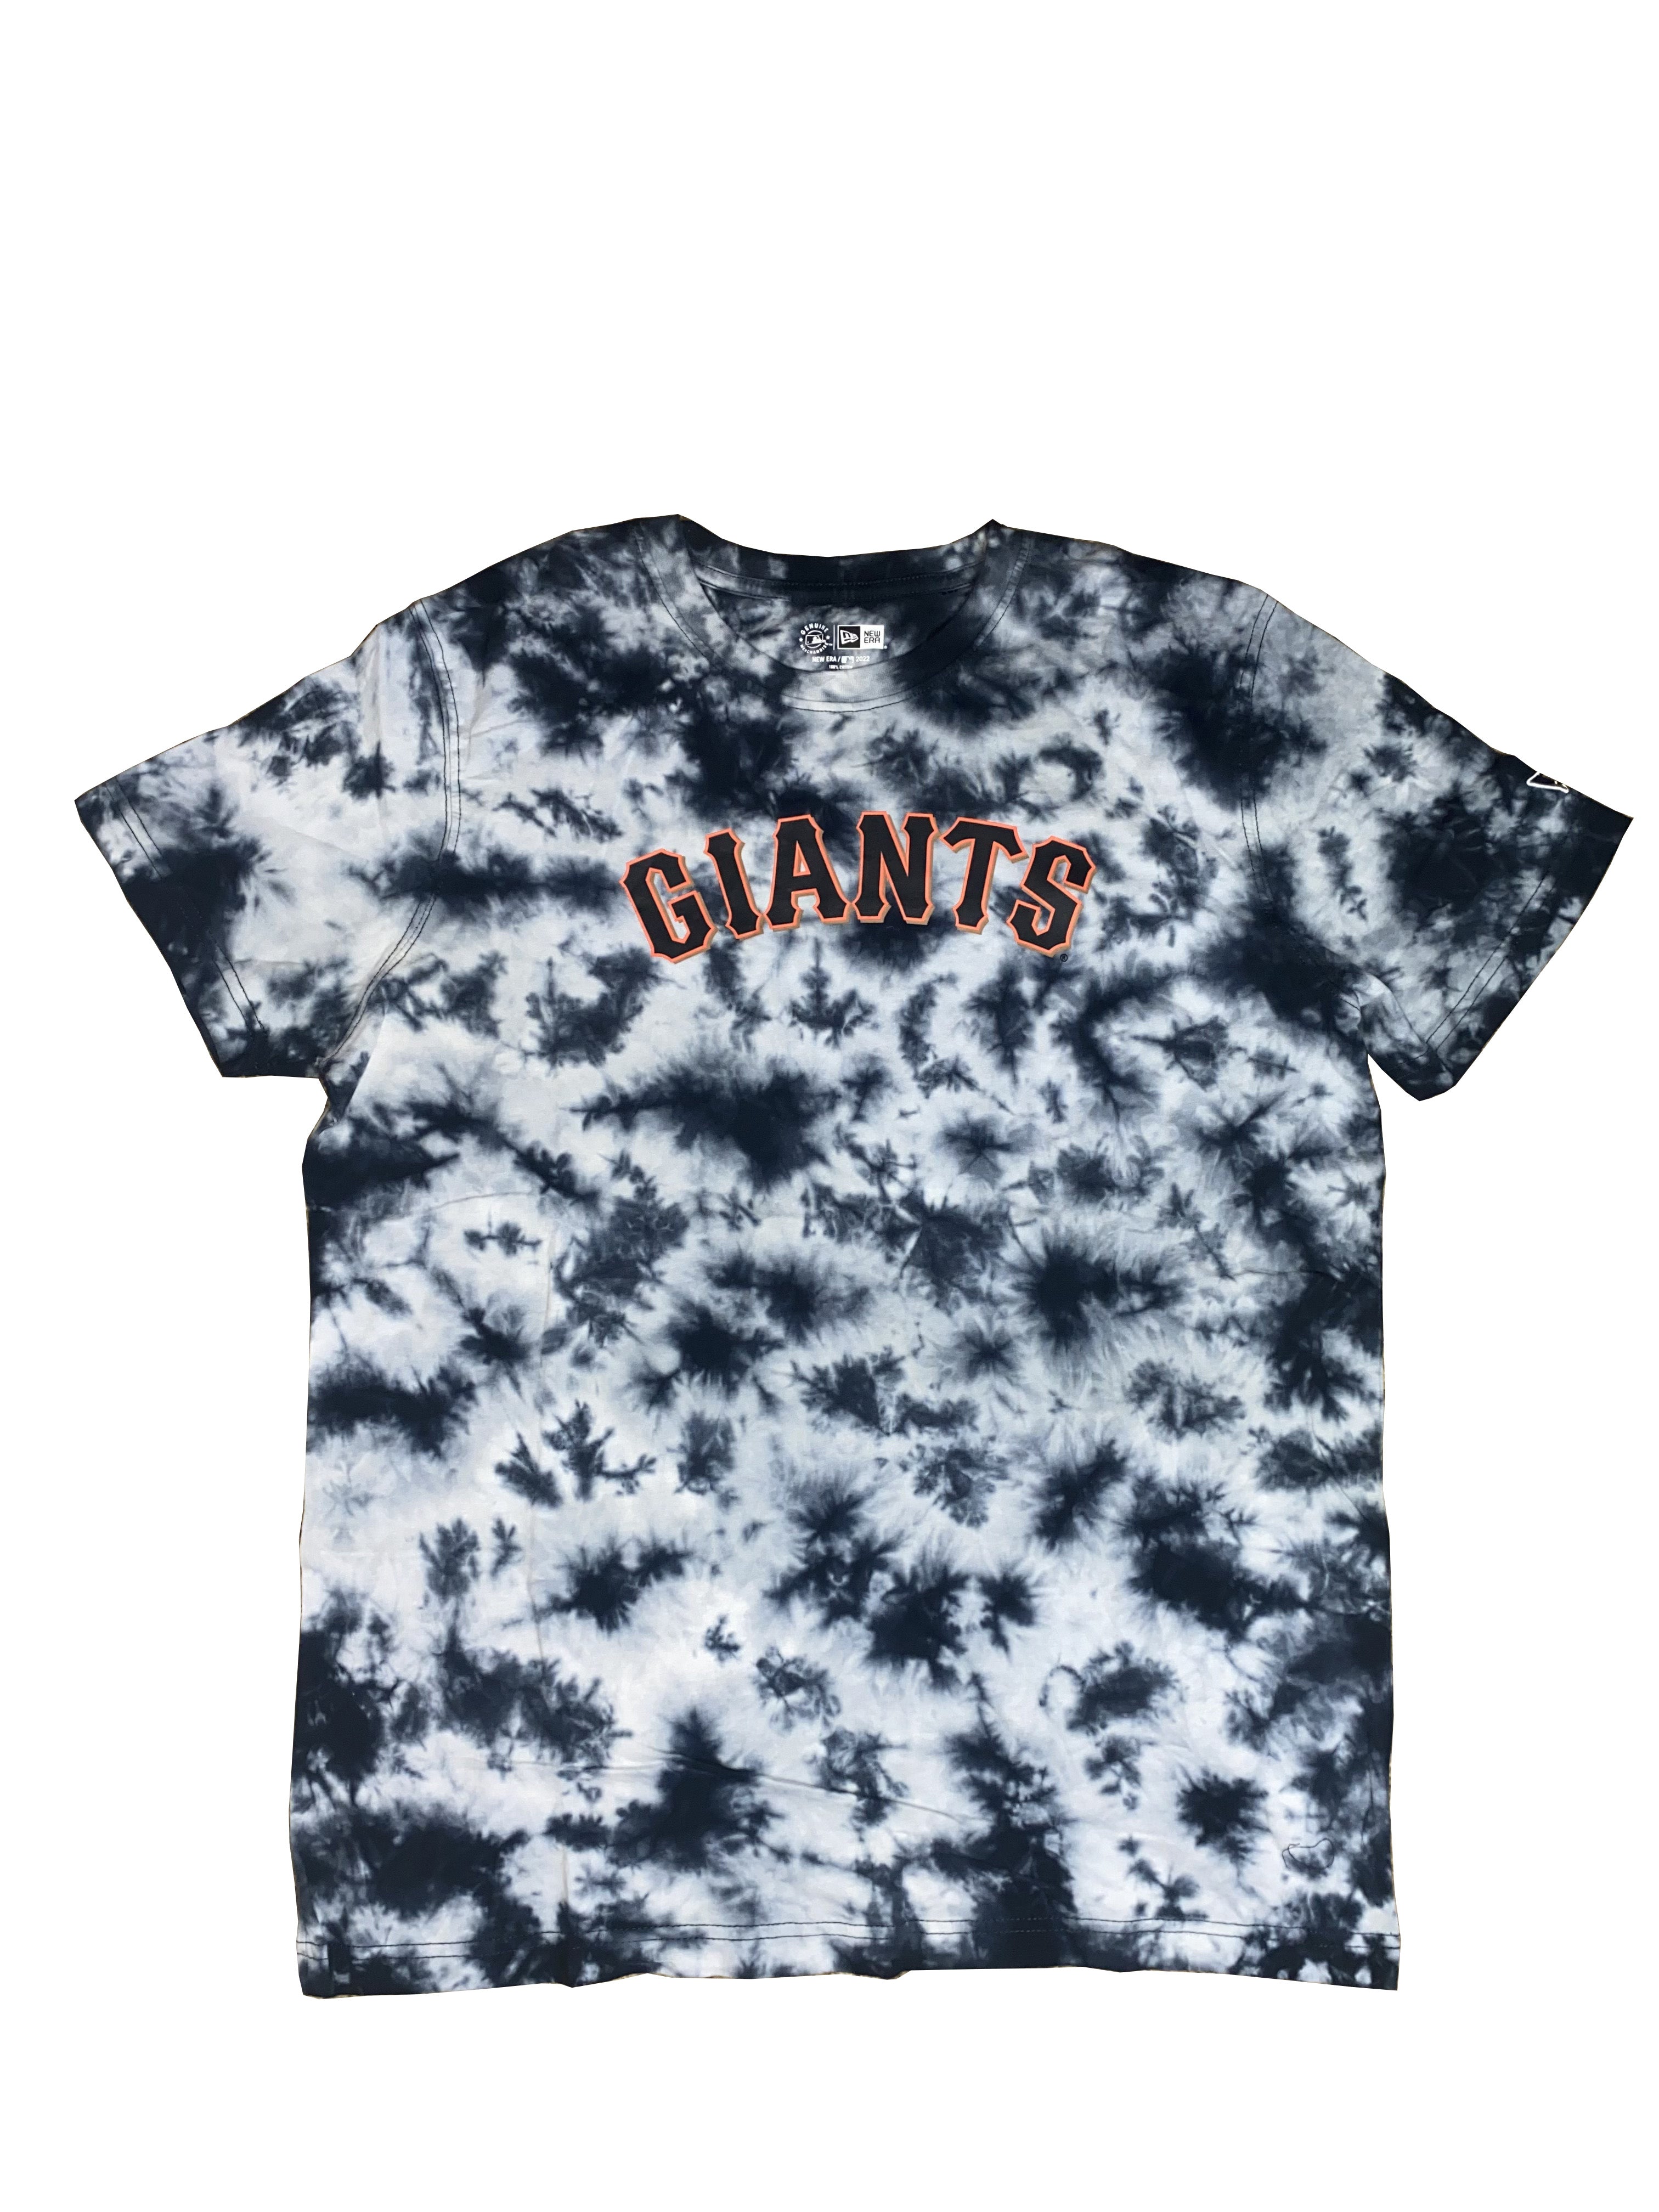 KoolThingTeez 90s San Francisco Giants Tie Dye T-Shirt. Vintage 1990s San Francisco Giants Baseball Tee Single Stitch Made in USA - XXXL 27 x 30.75